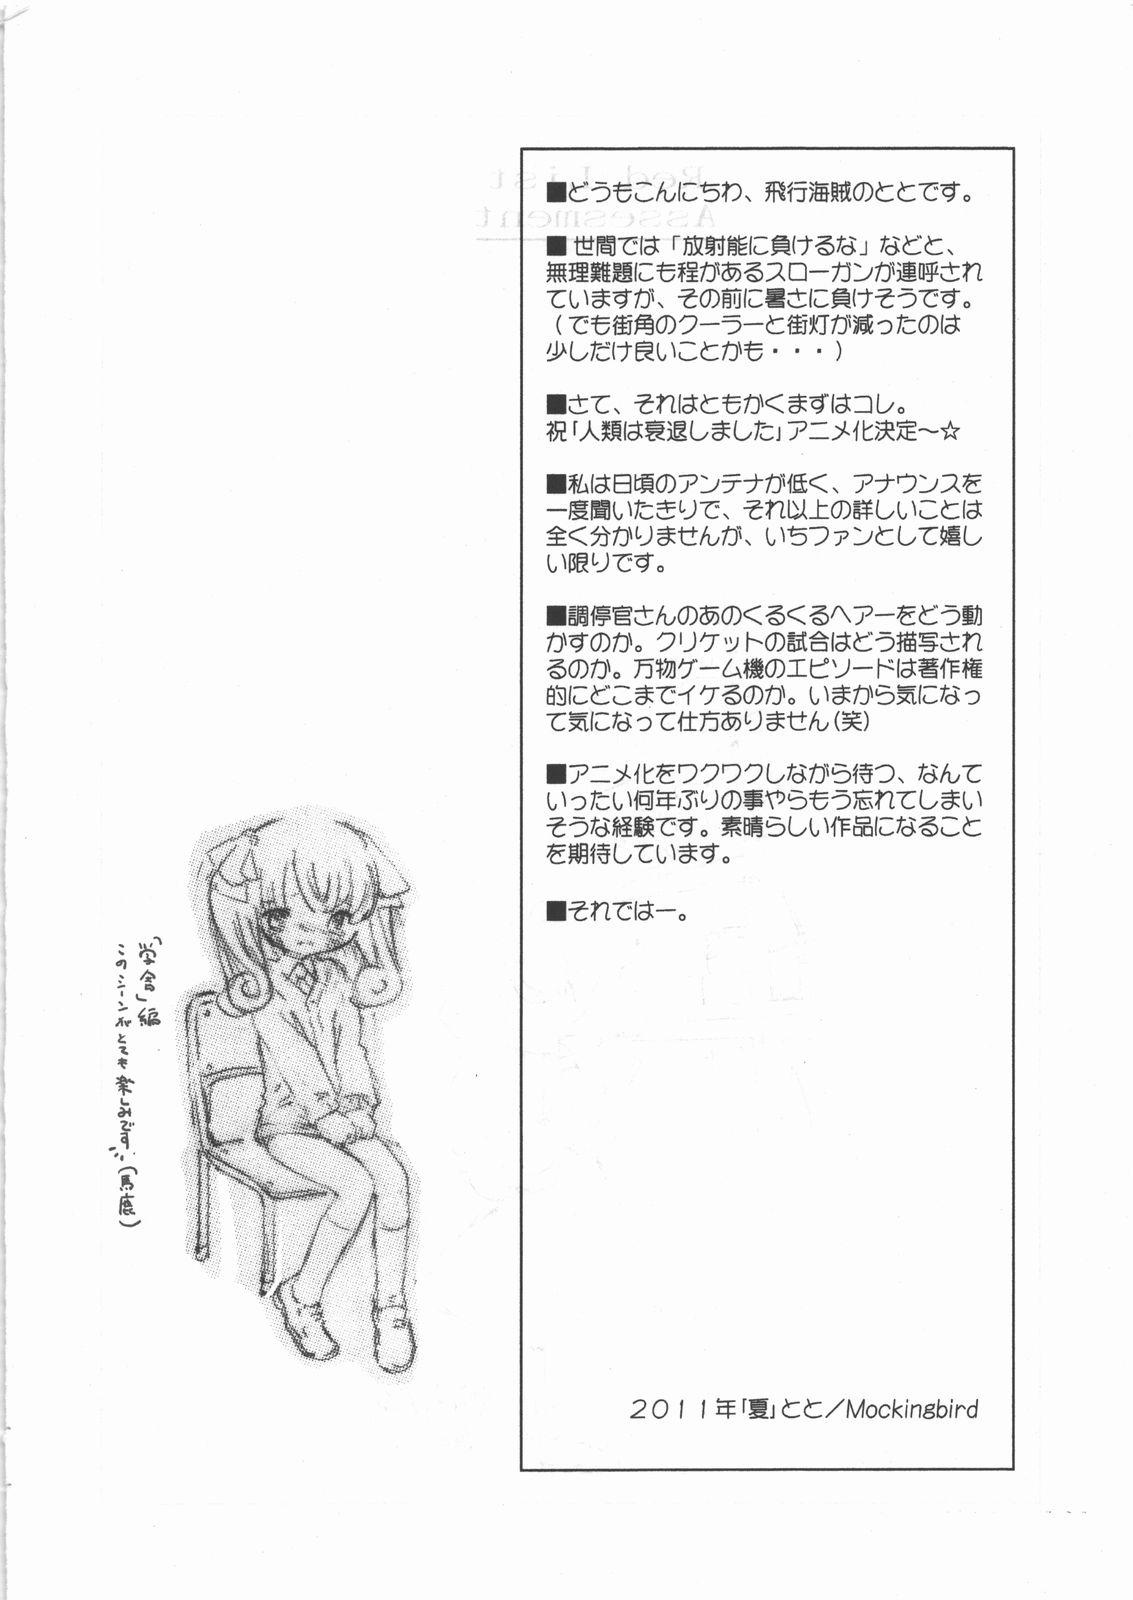 Sexcams Red List Assessment - Zetsumetsu Kigushu San - Jinrui wa suitai shimashita Licking - Picture 3